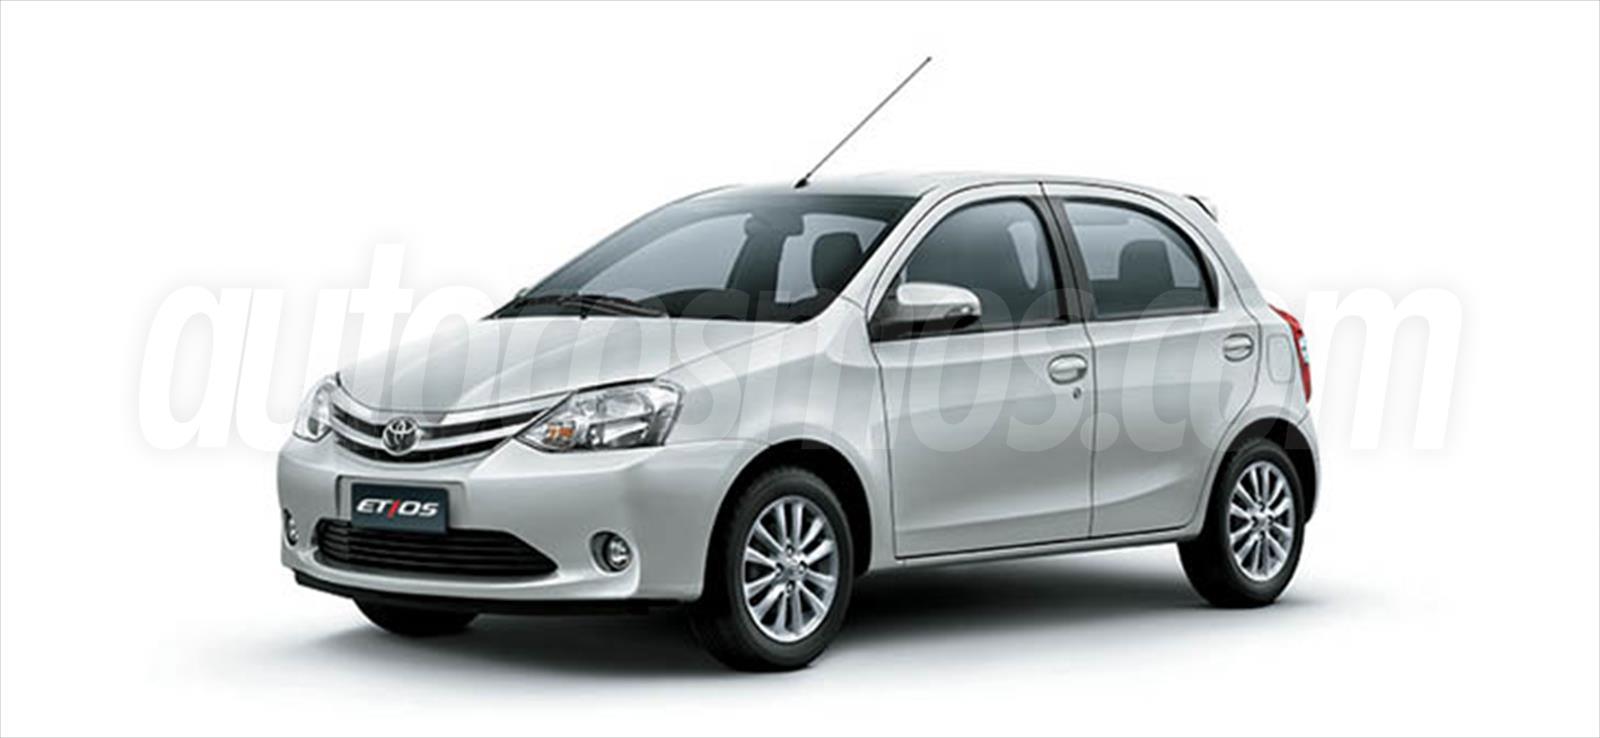 Toyota etios hatchback photos